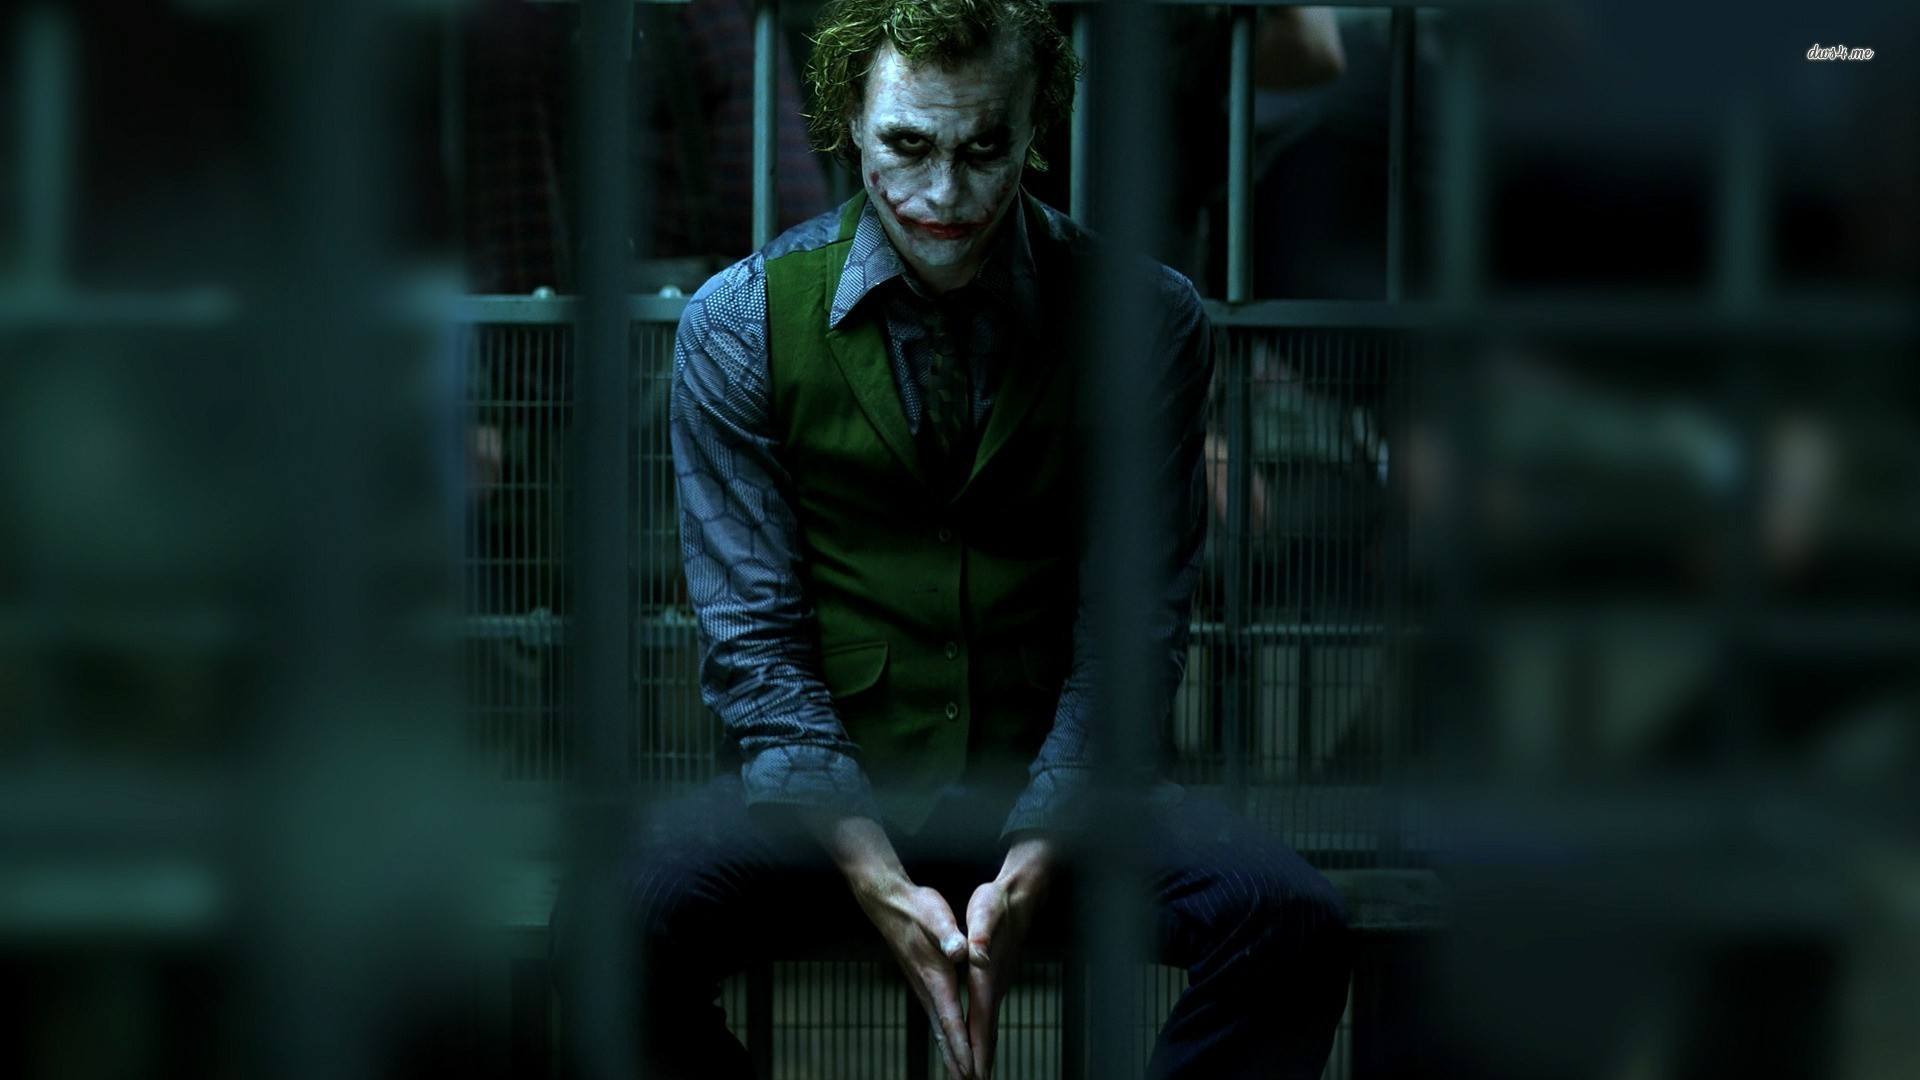 Heath Ledger aka The Joker El Guasn El caballero de la noche asciende